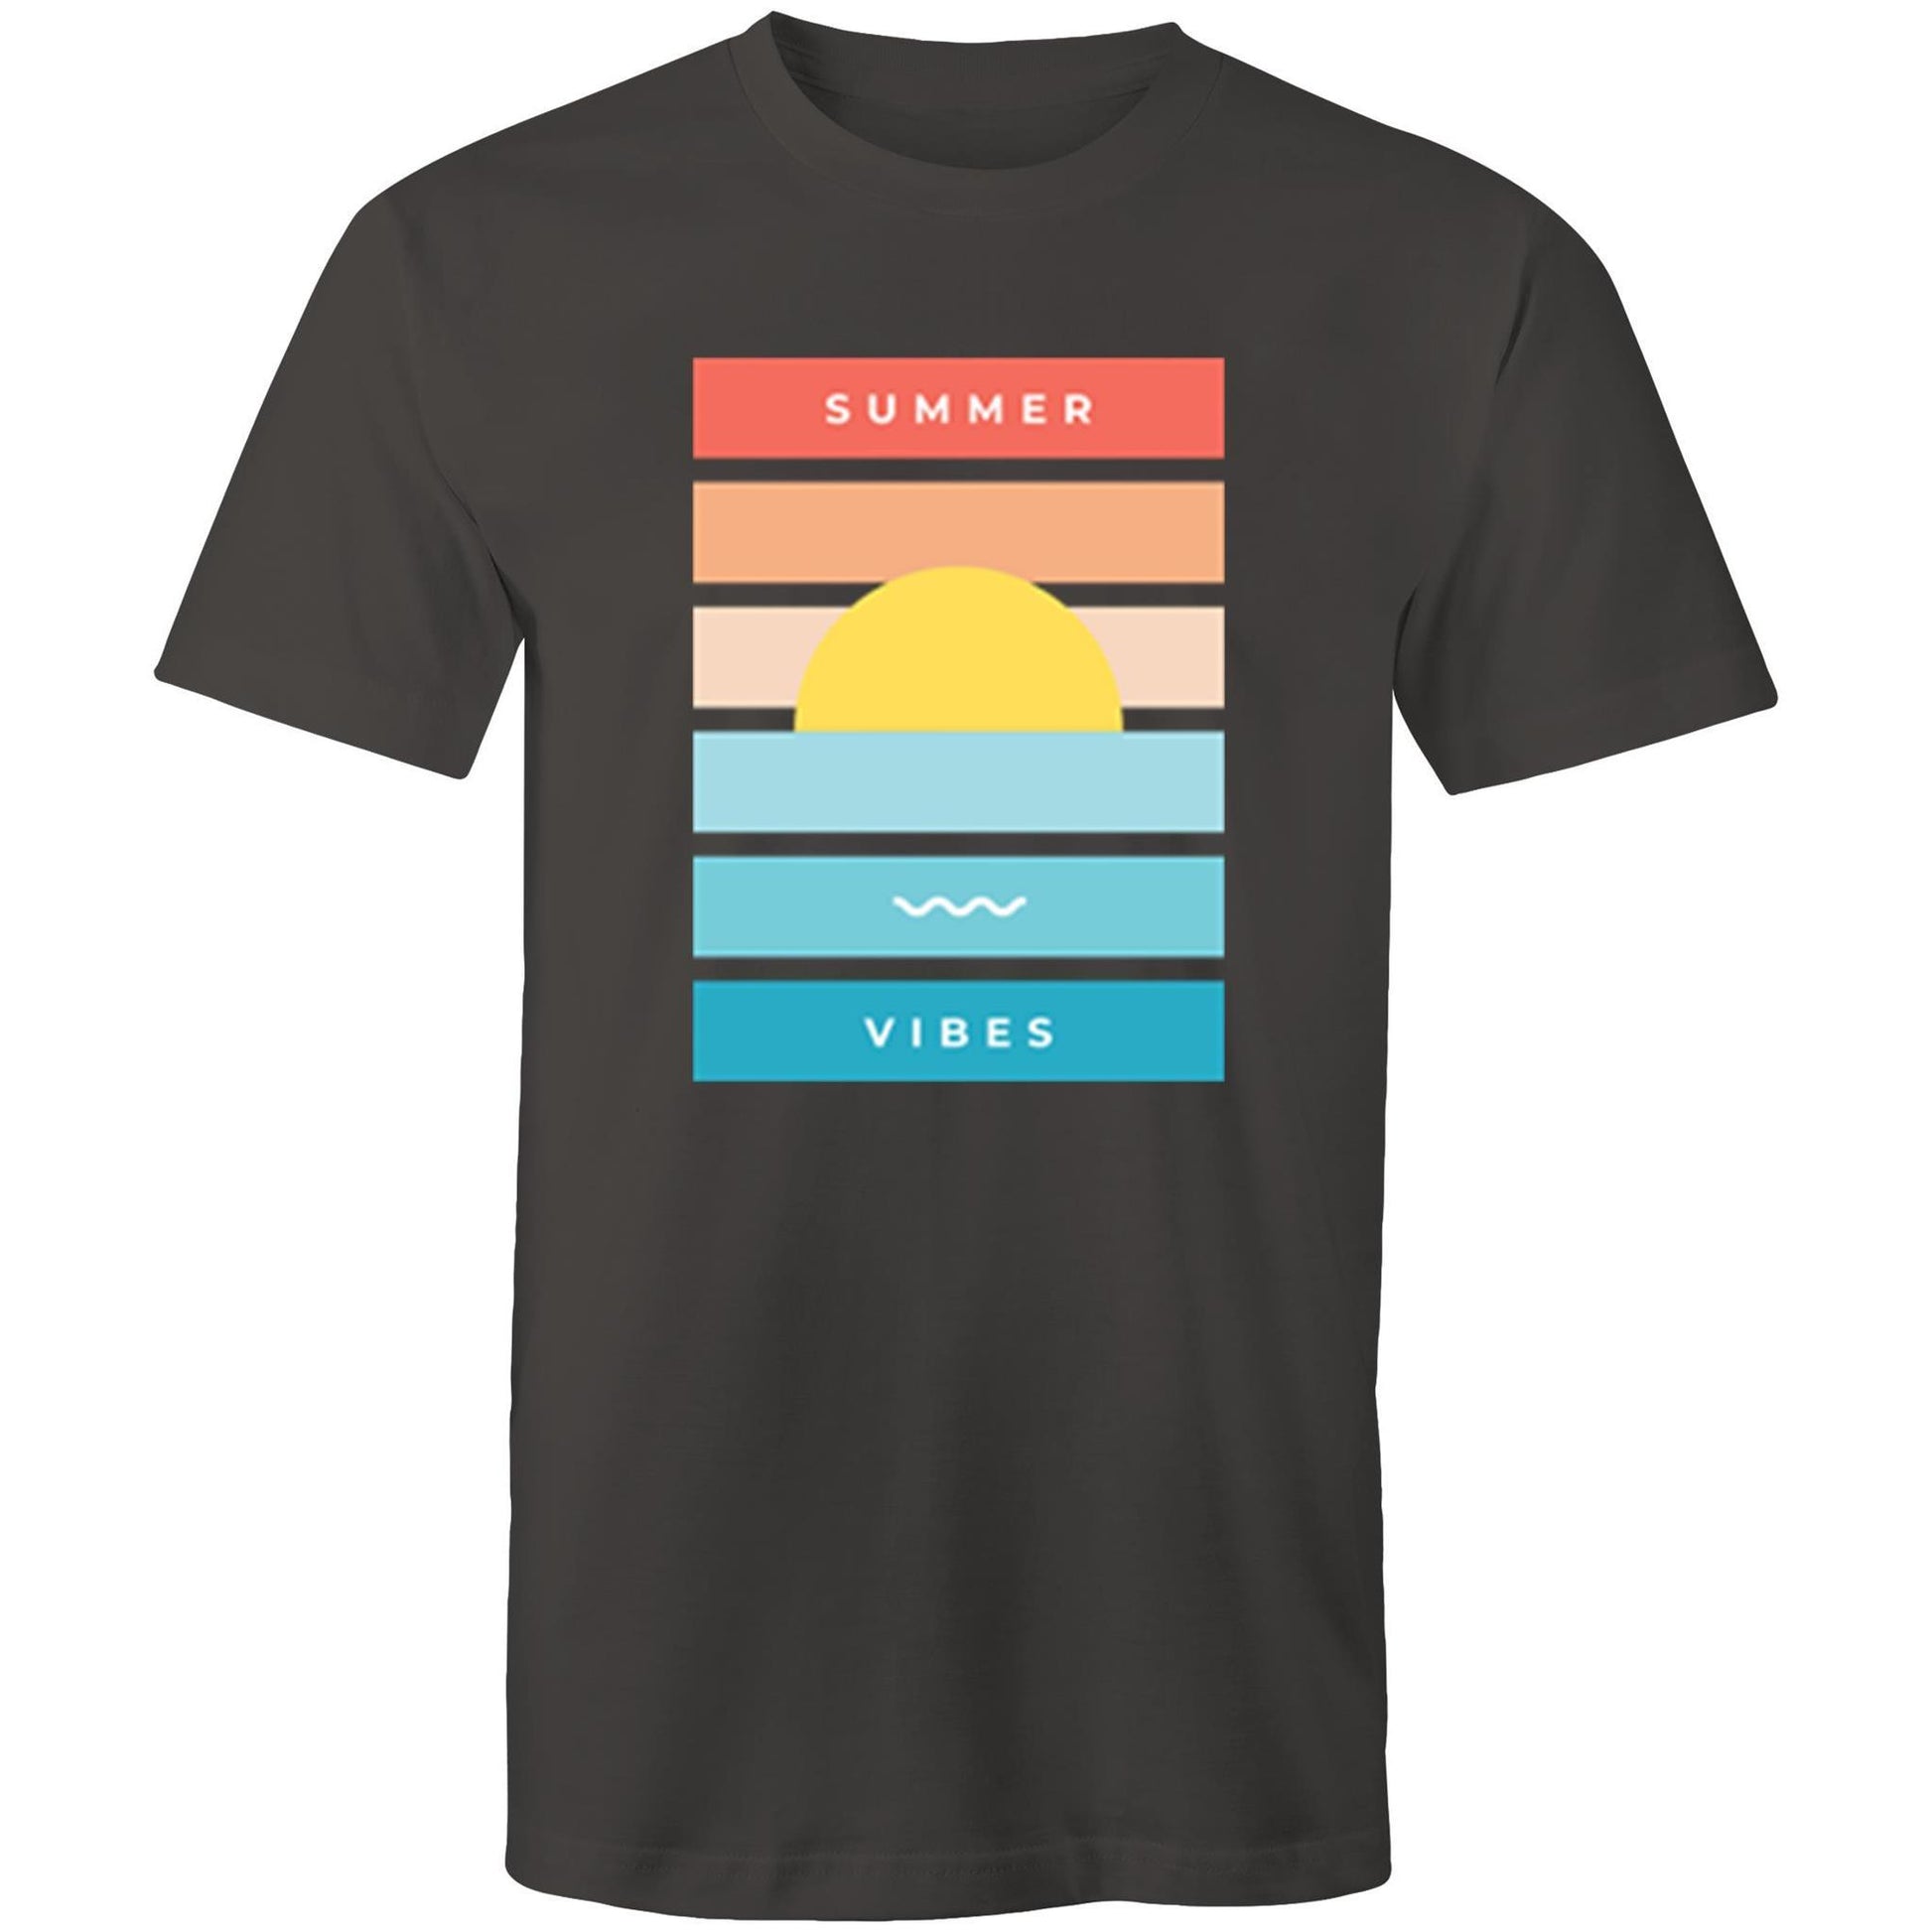 Summer Vibes - Mens T-Shirt Charcoal Mens T-shirt Mens Retro Summer